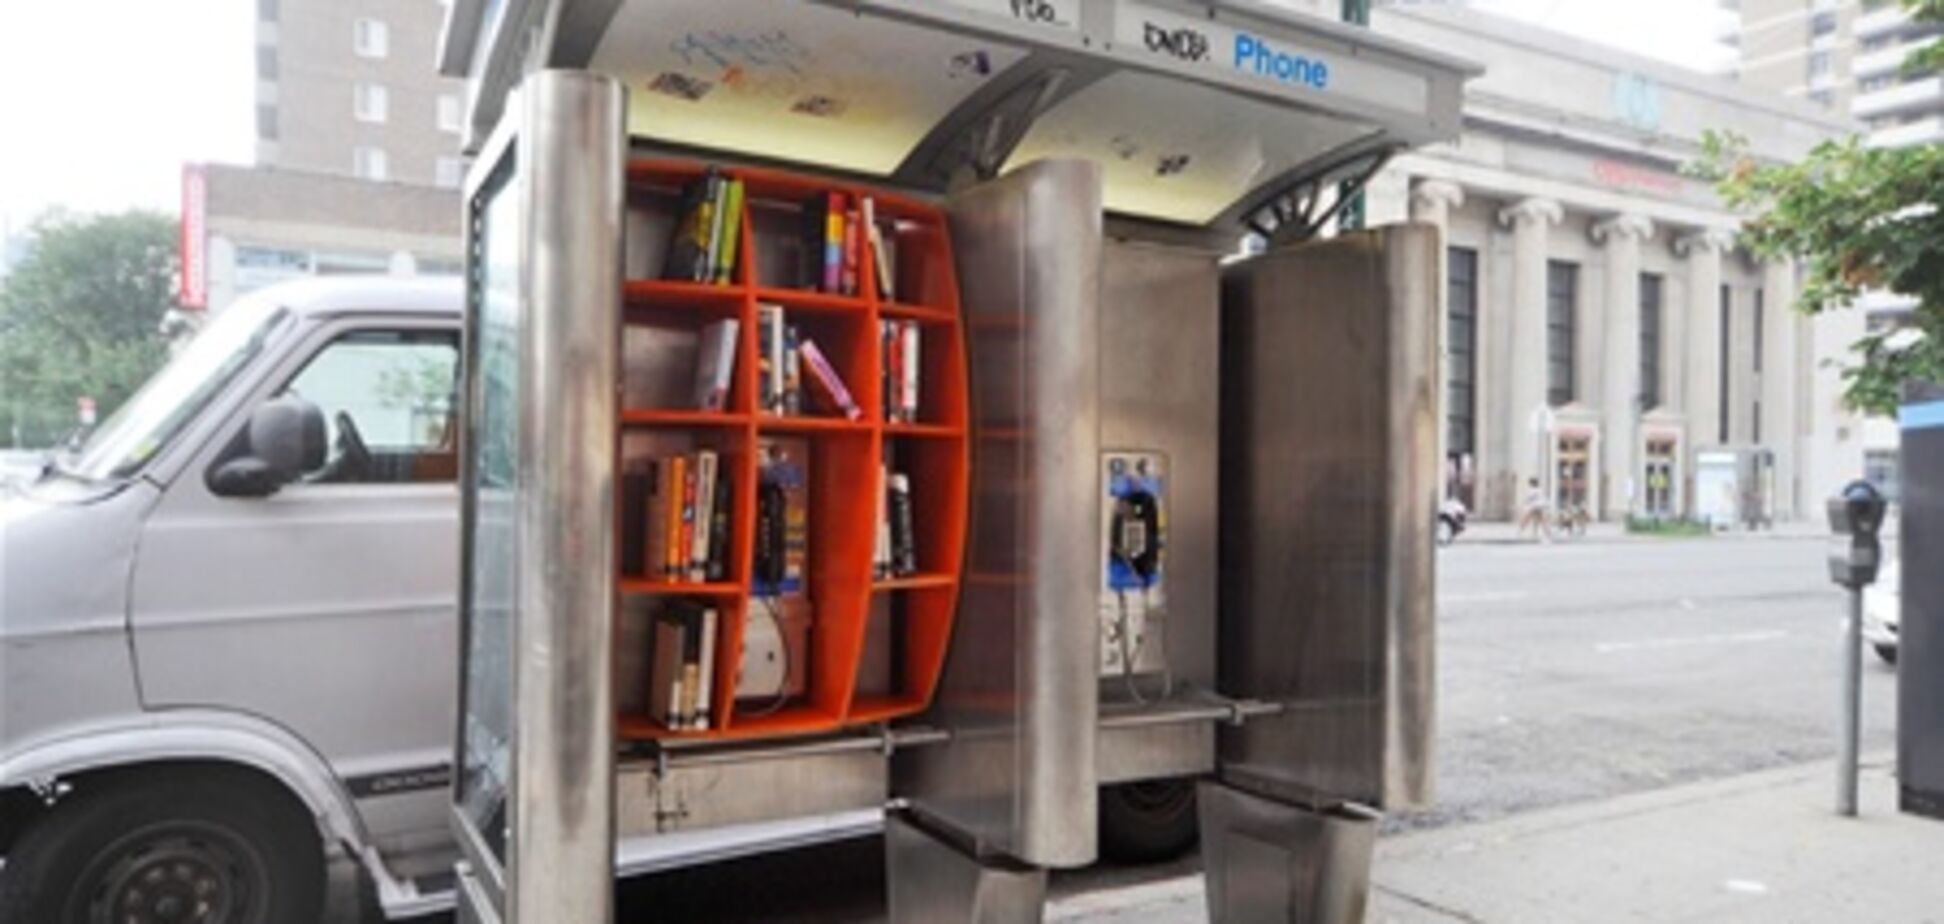 Телефонные будки Нью-Йорка стали библиотеками